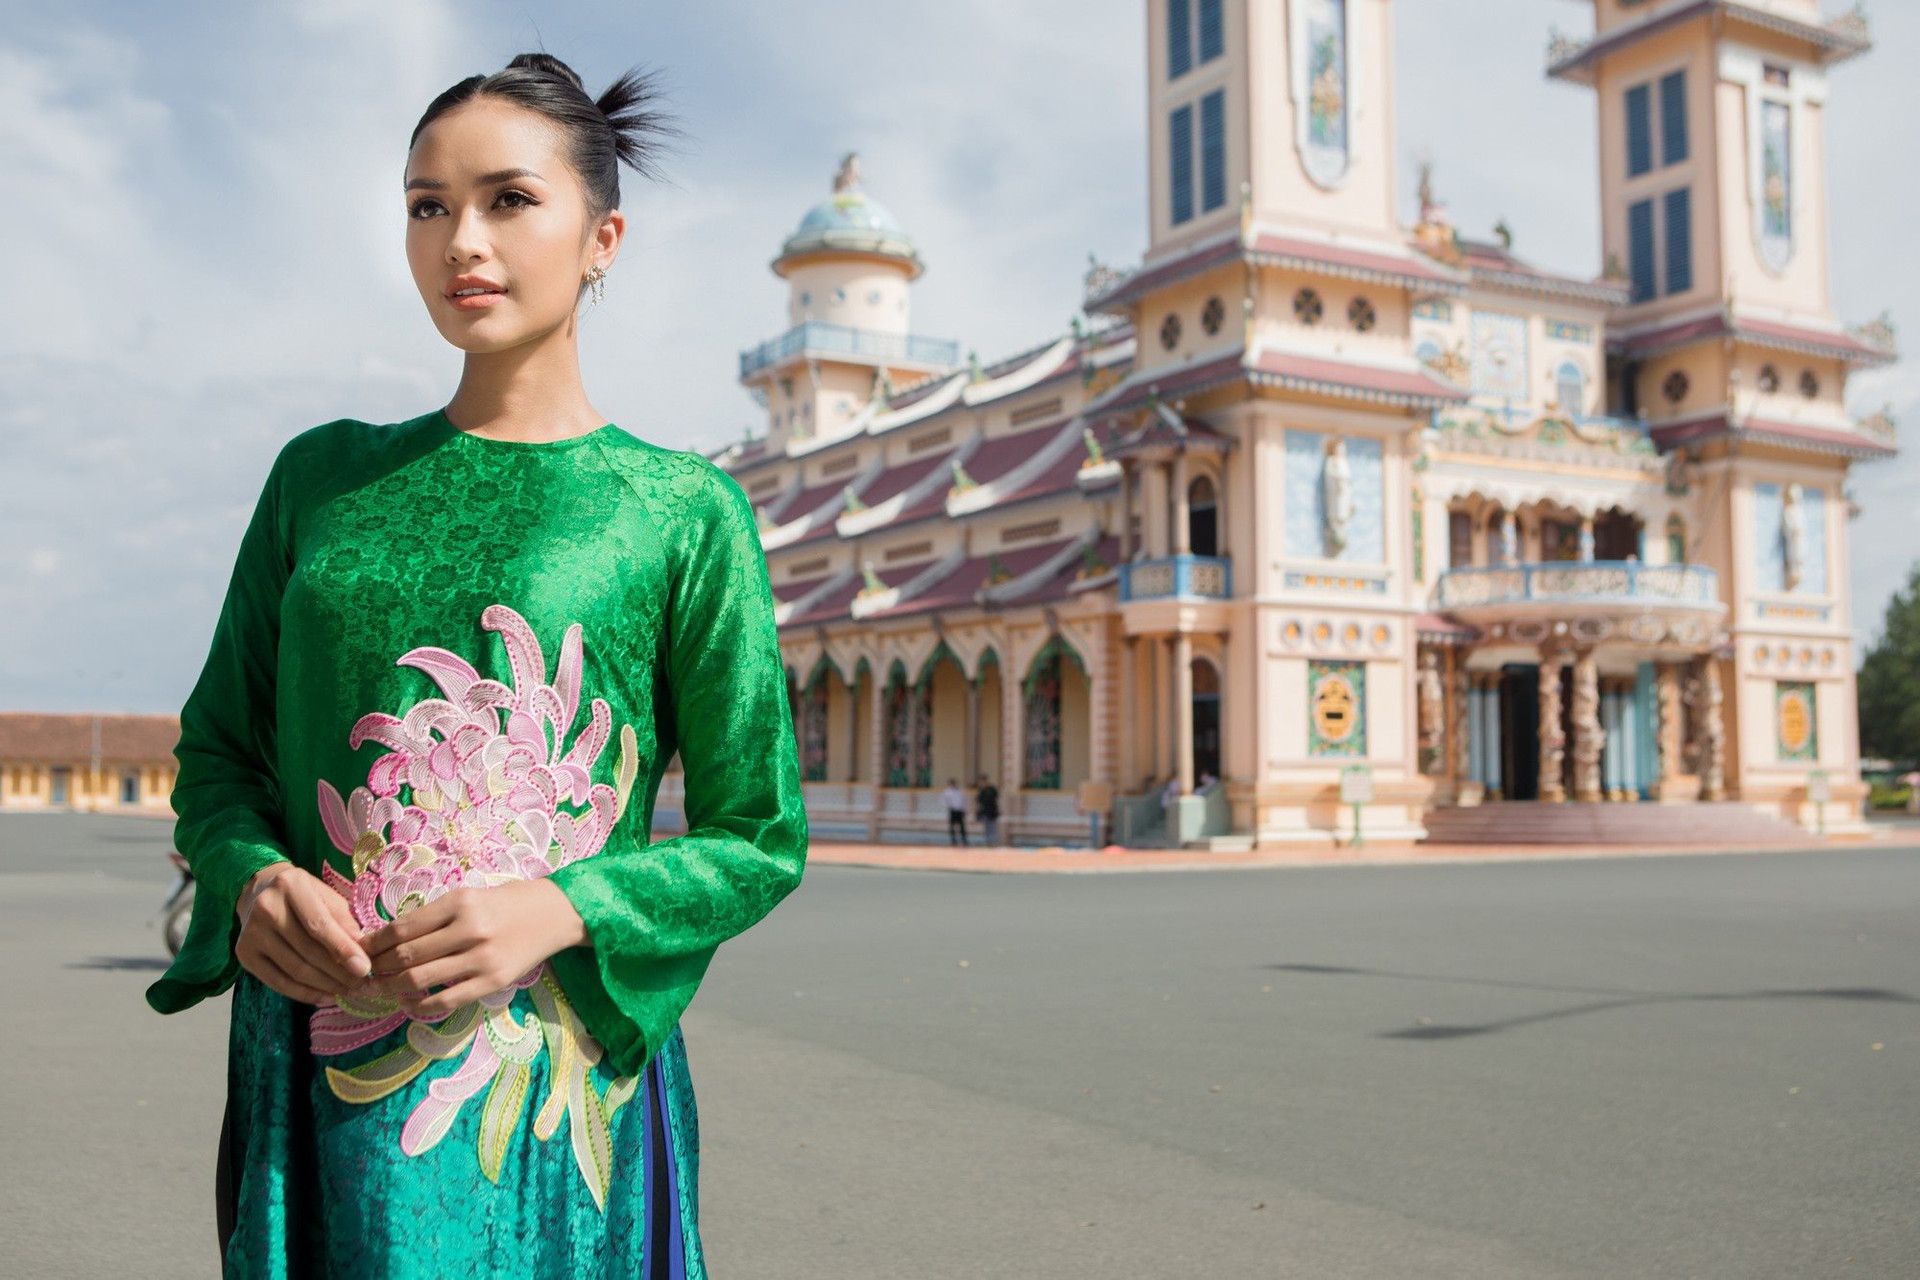 ngochau rtmuep2 27  Hoa hậu Ngọc Châu mang “giấc mơ của mẹ” đến Miss Universe 2022